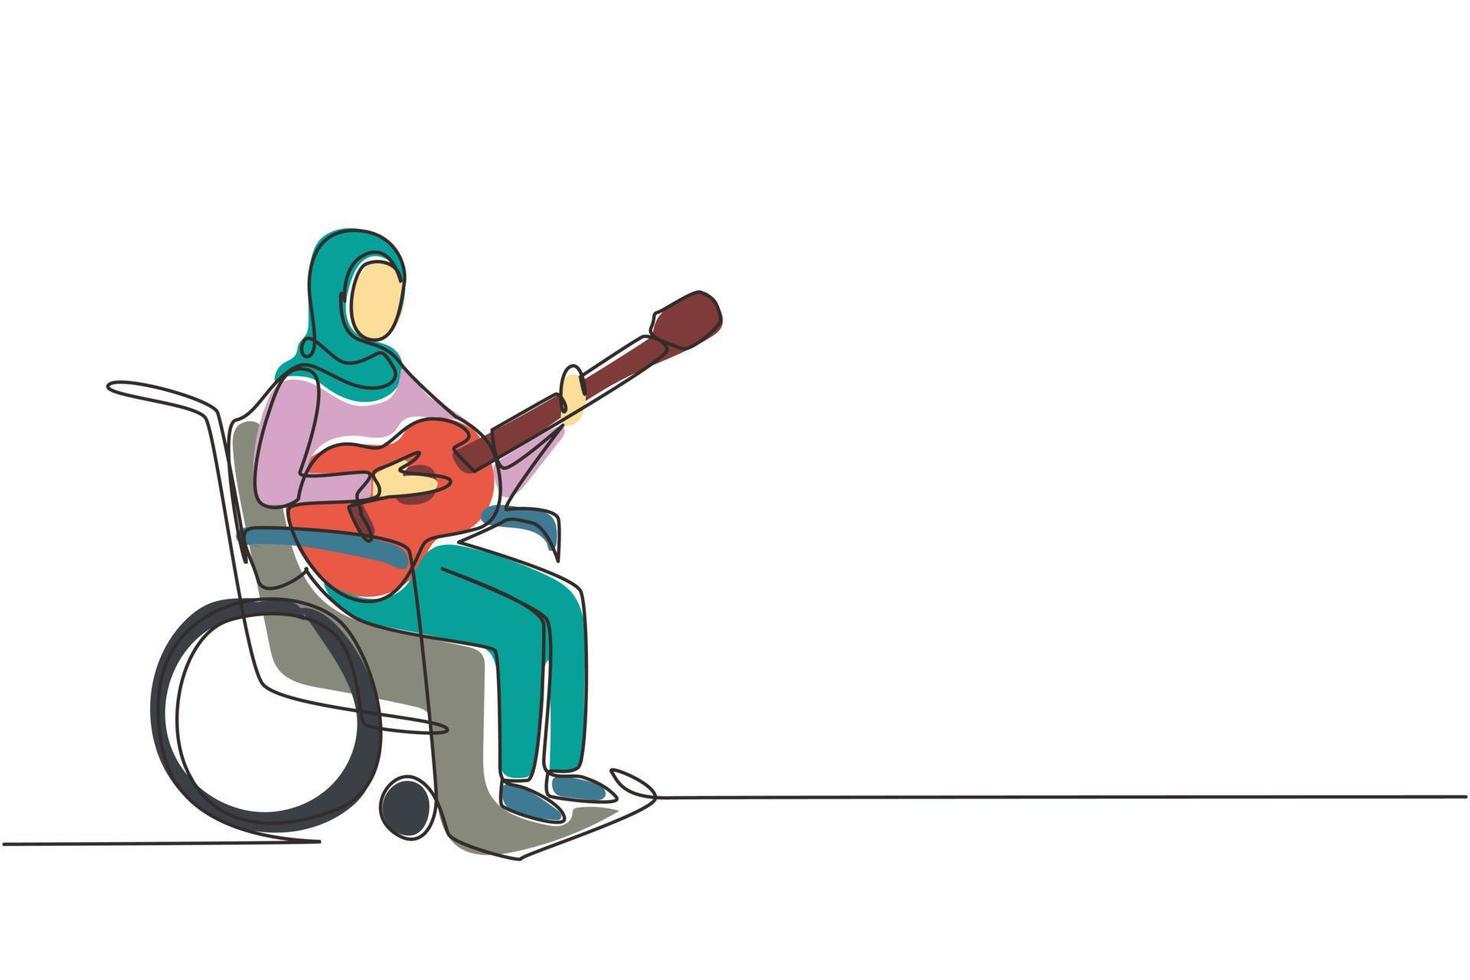 einzelne durchgehende strichzeichnung junge arabische frau sitzen im rollstuhl mit akustikgitarre spielen musik, singen lied. körperlich behindert. Patient des Rehabilitationszentrums. eine Linie zeichnen Design-Vektor-Illustration vektor